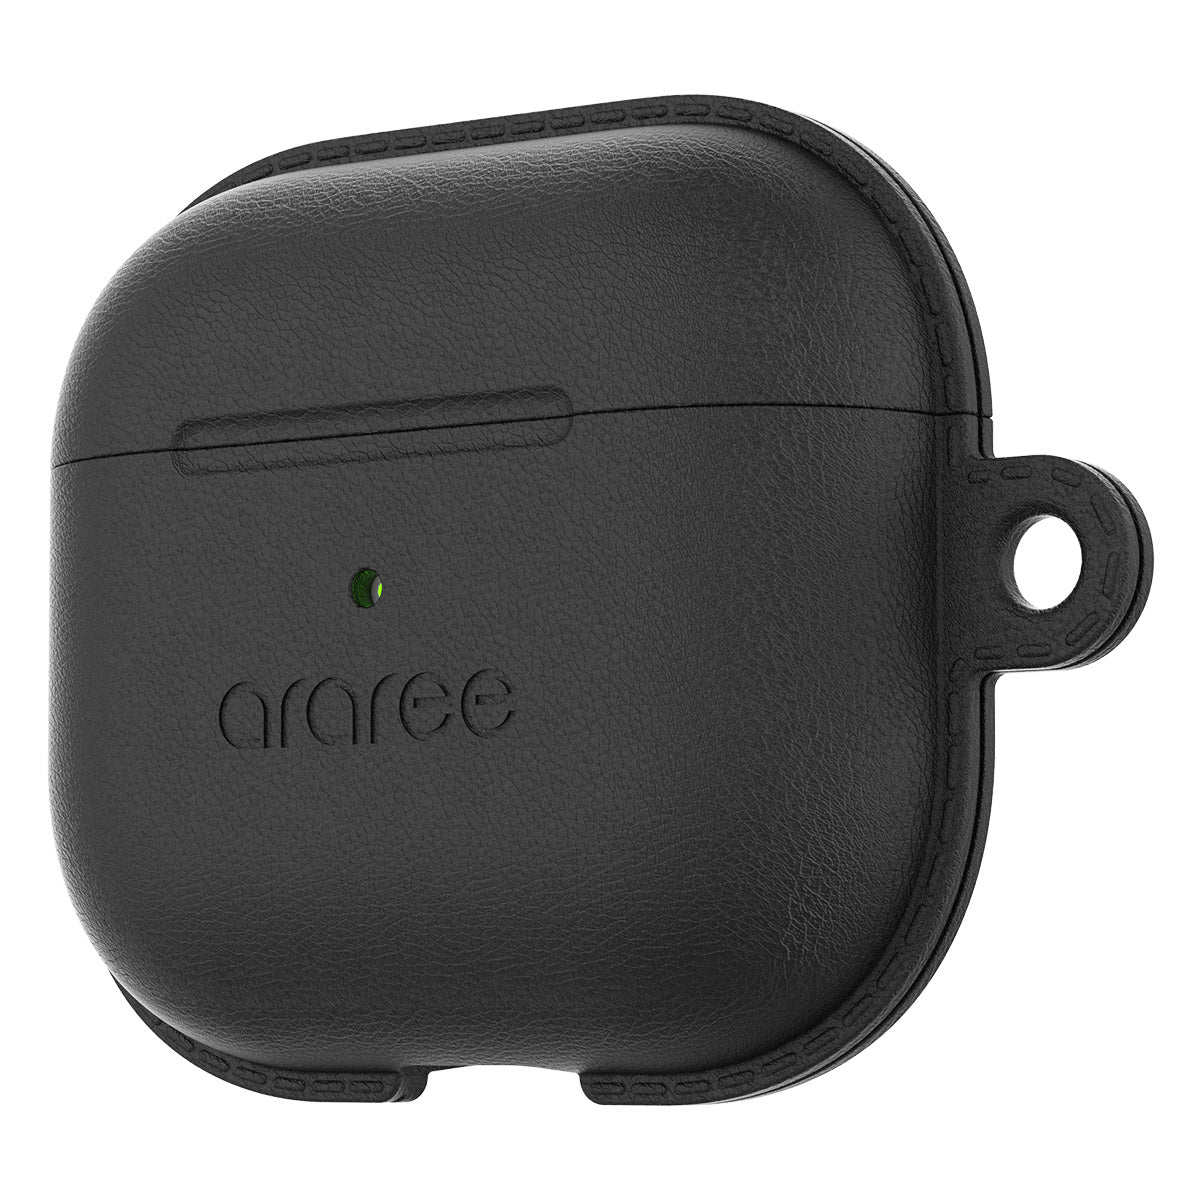 Araree Pops Case For Airpod 3 - Black